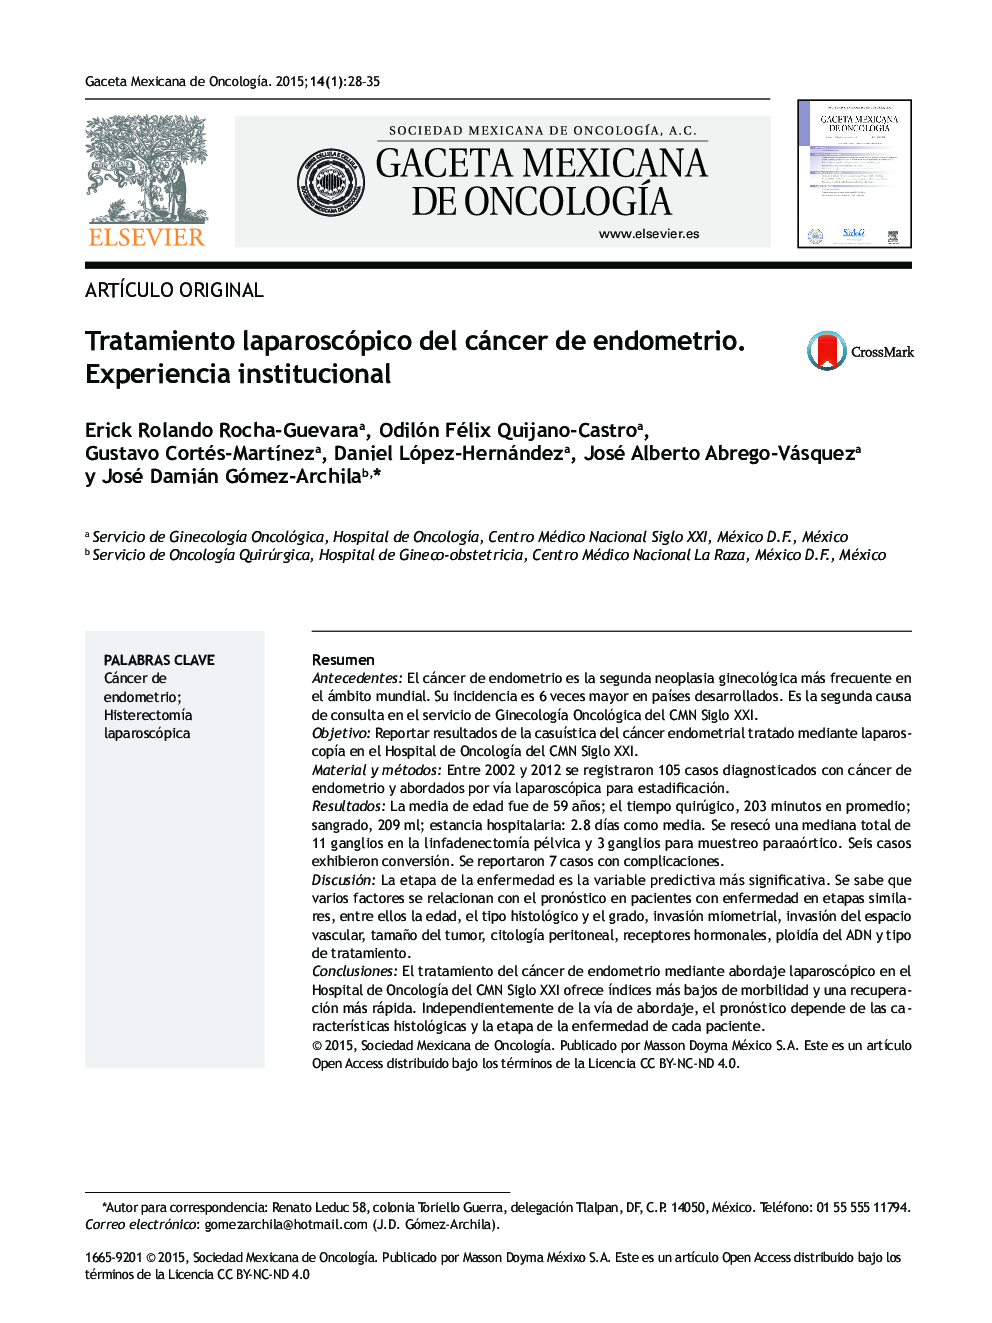 درمان لاپاروسکوپی سرطان آندومتر. تجربه سازمانی 